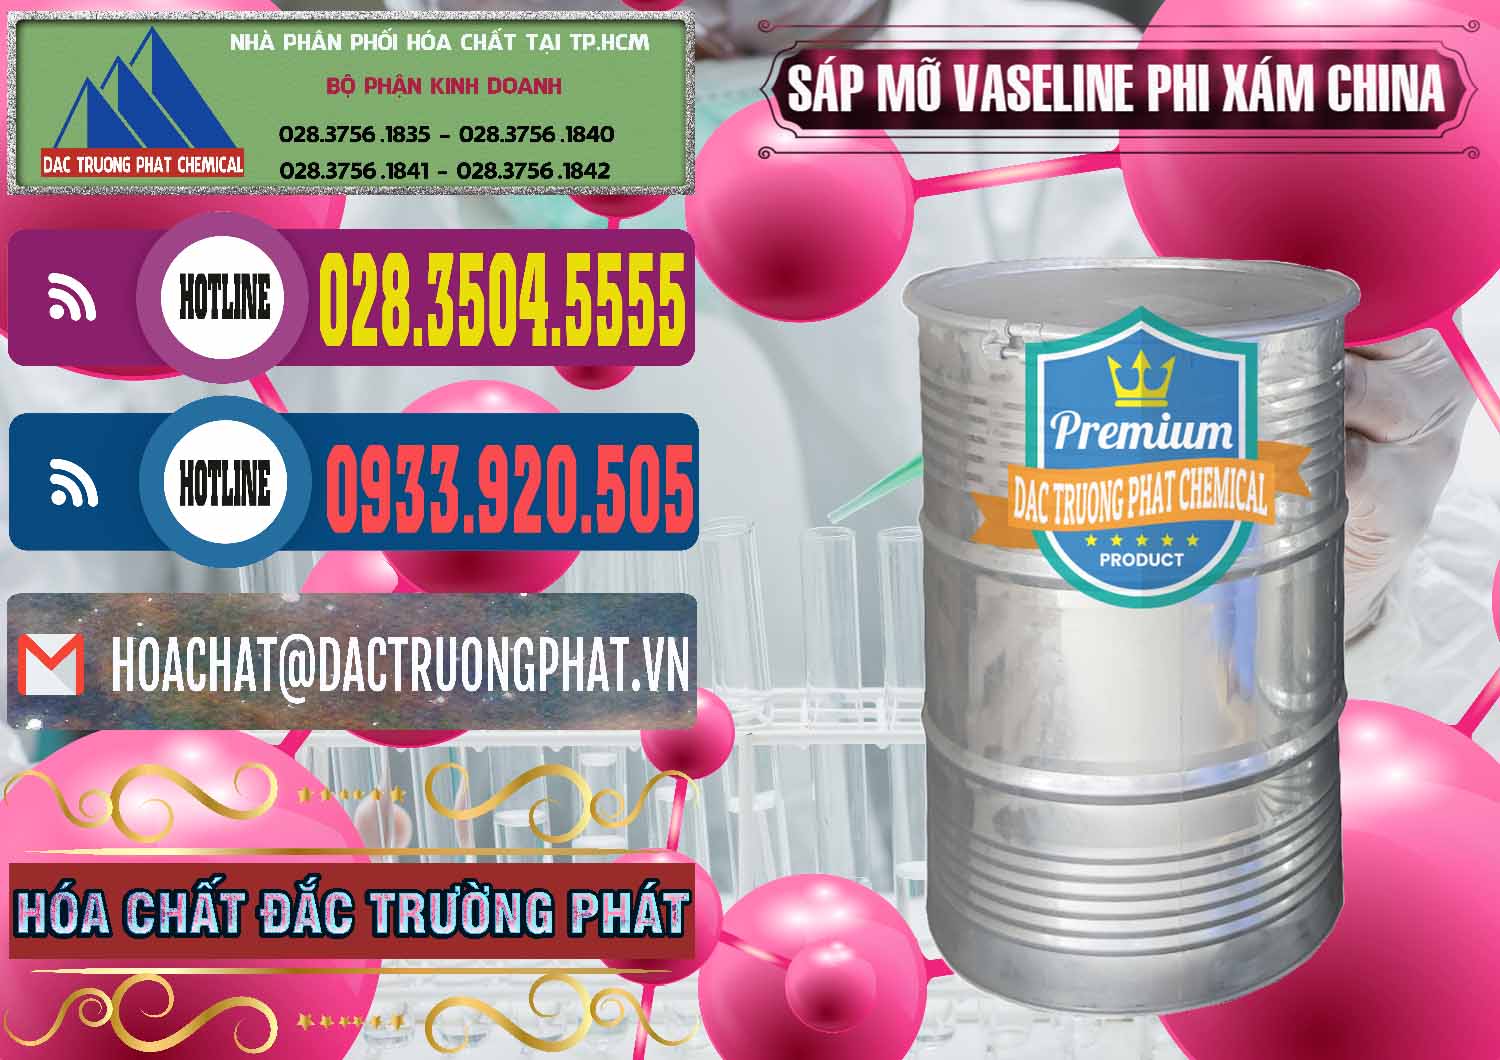 Cty chuyên bán - phân phối Sáp Mỡ Vaseline Phi Xám Trung Quốc China - 0291 - Phân phối và cung cấp hóa chất tại TP.HCM - muabanhoachat.com.vn